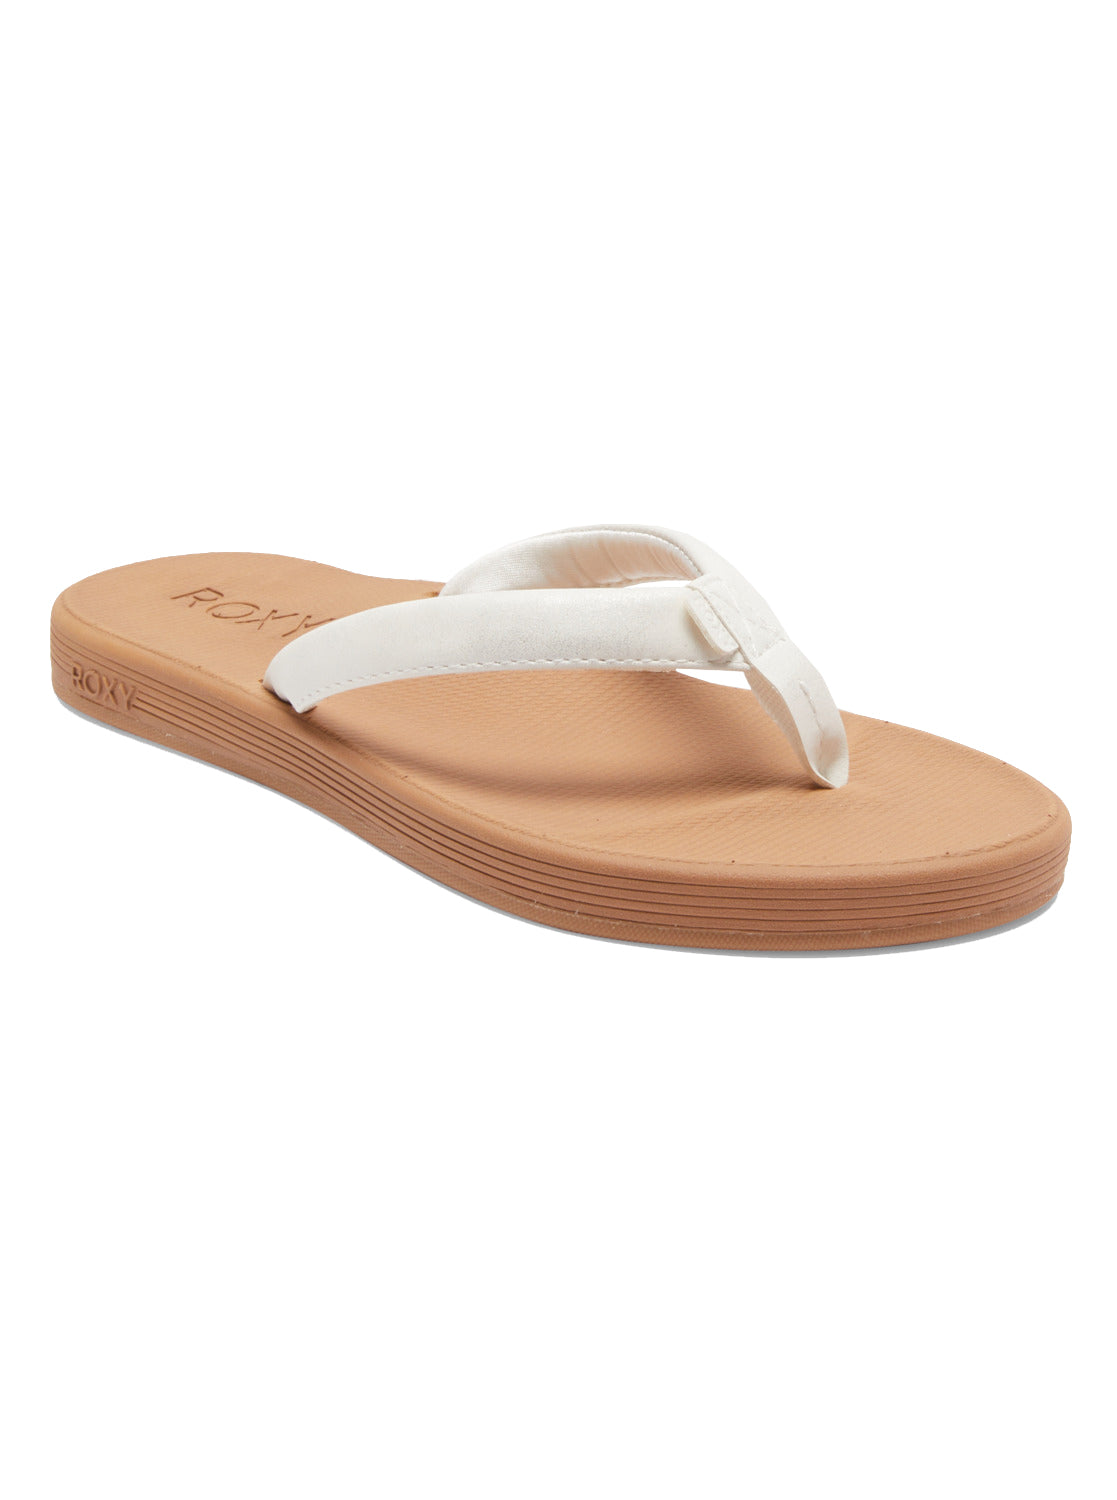 Roxy Solana Womens Sandal WHT-White 10